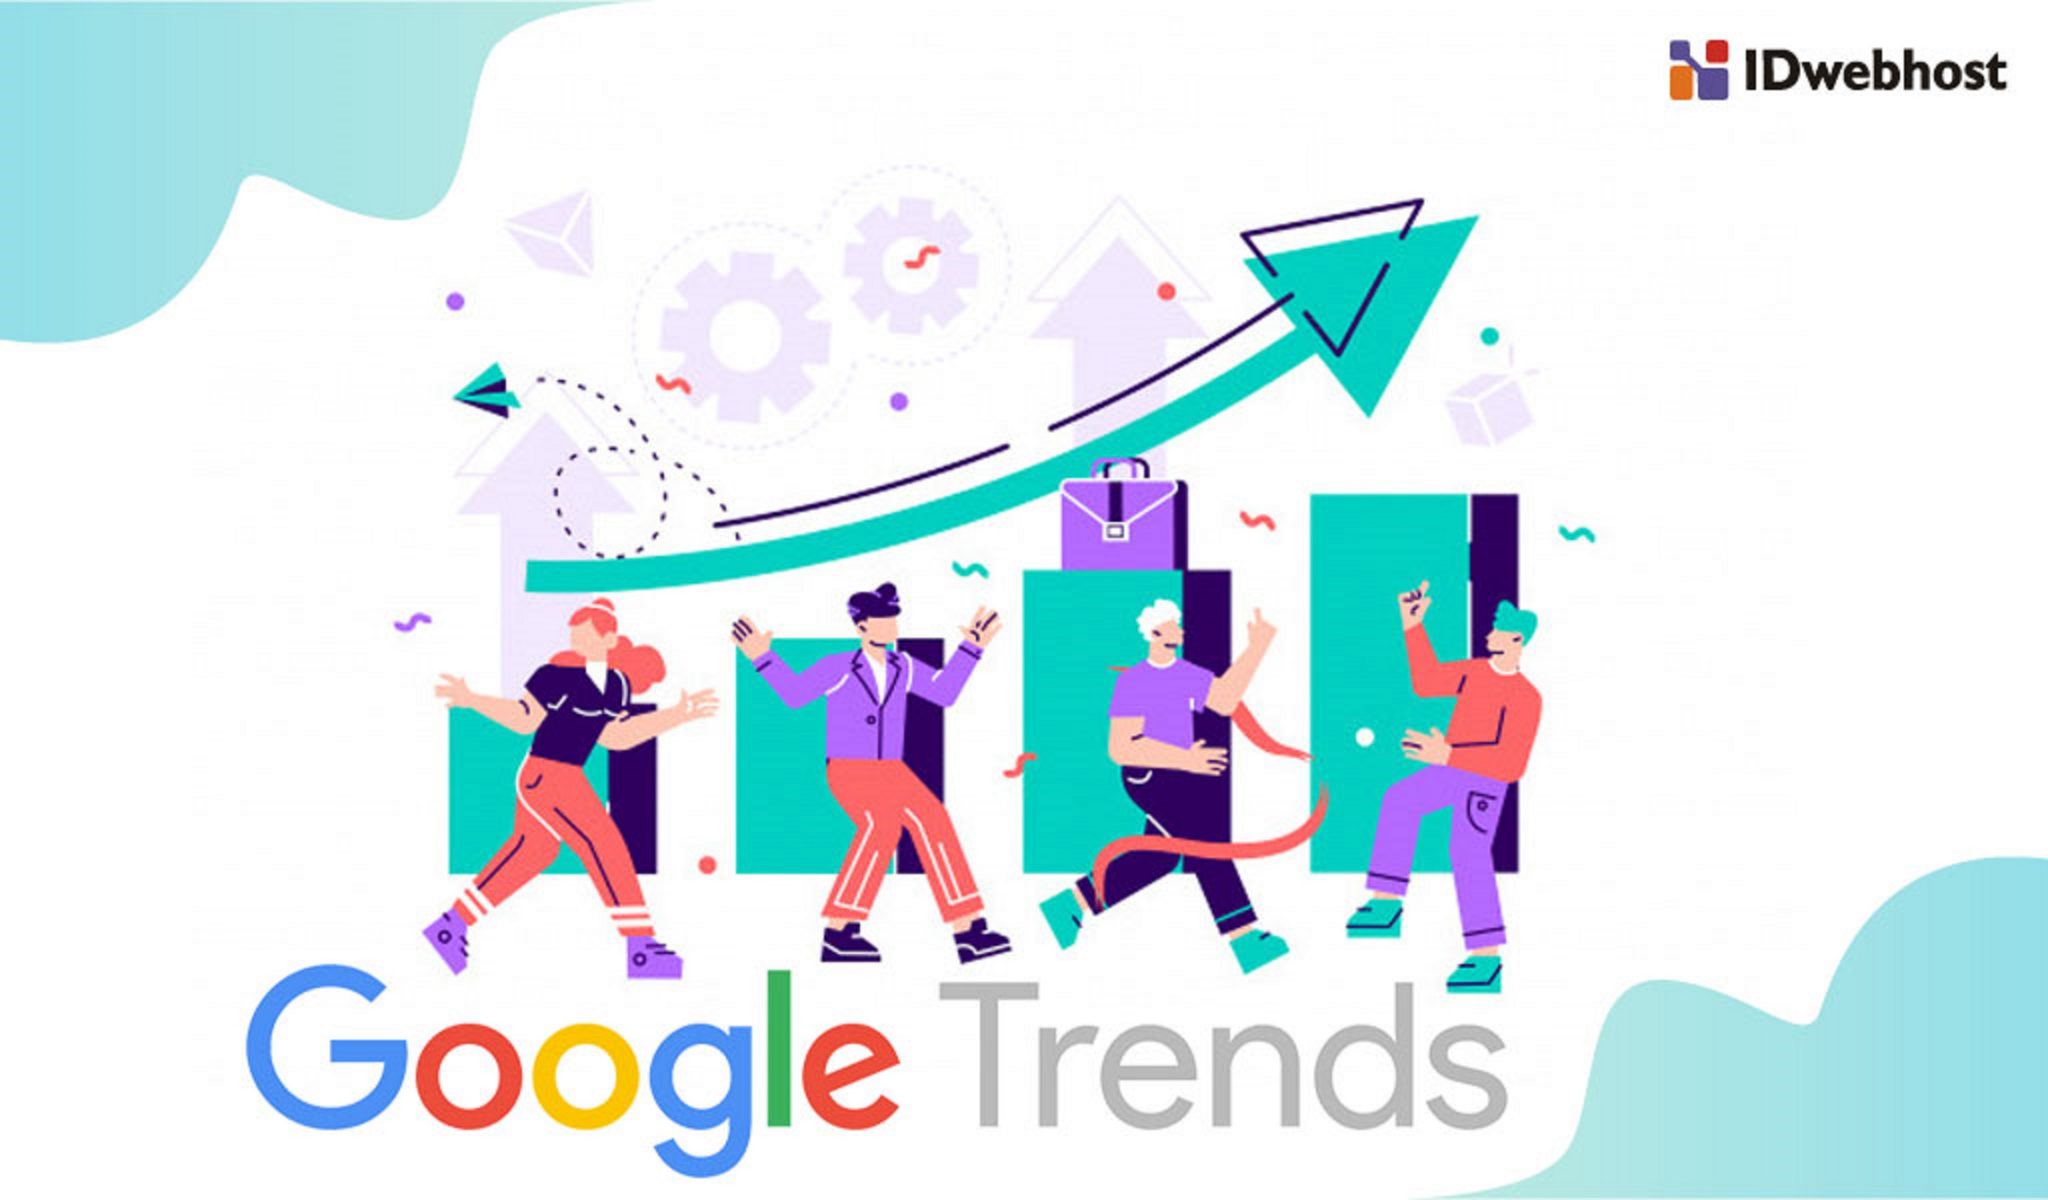 google trends explore indonesia